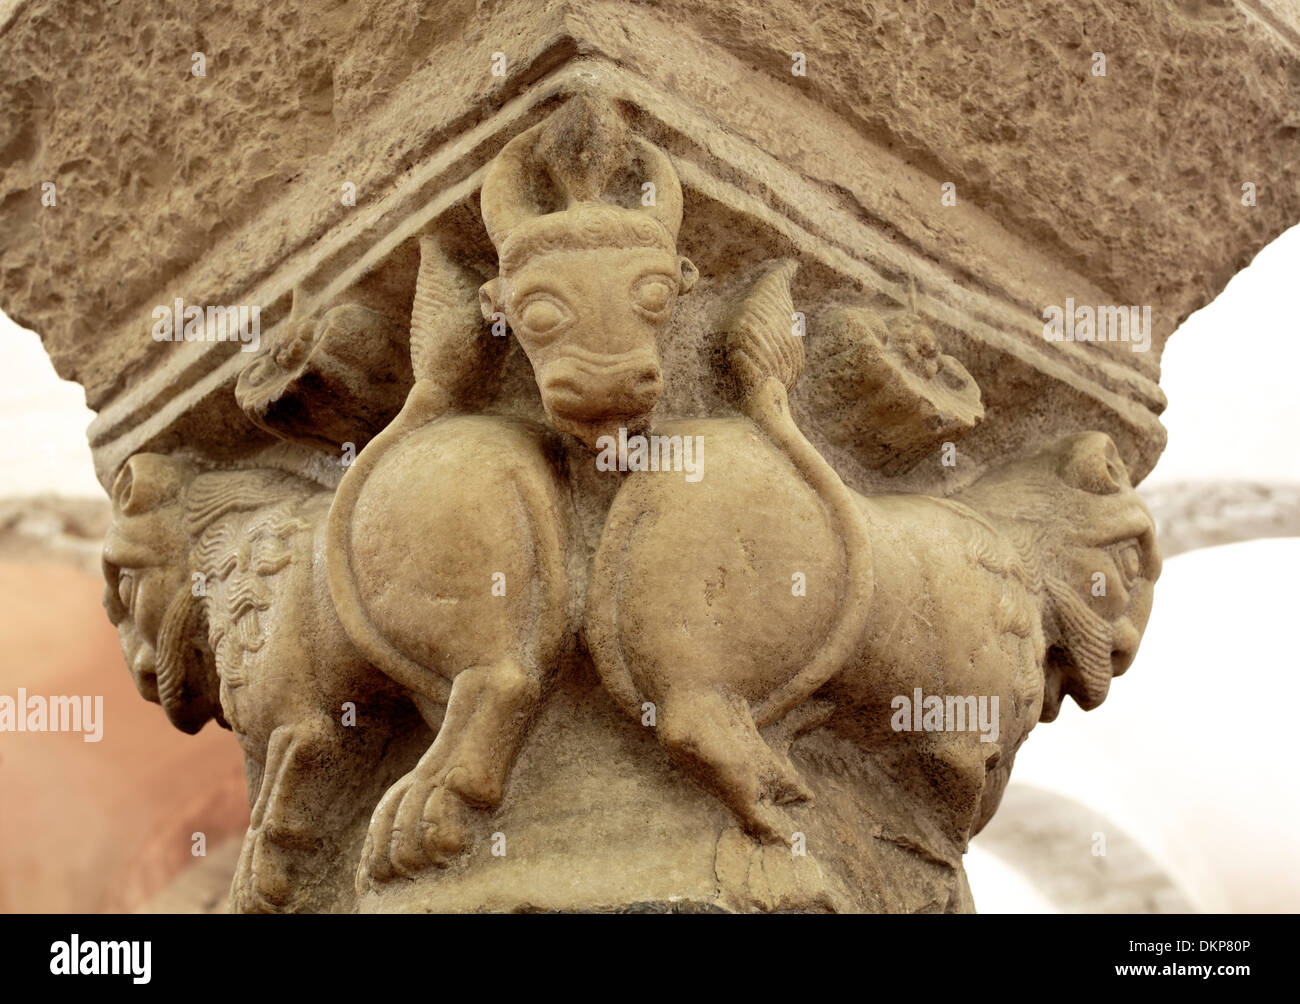 Mittelalterliche Hauptstadt Spalten, Krypta der Basilika des Heiligen Nikolaus (Basilica di San Nicola), Bari, Apulien, Italien Stockfoto